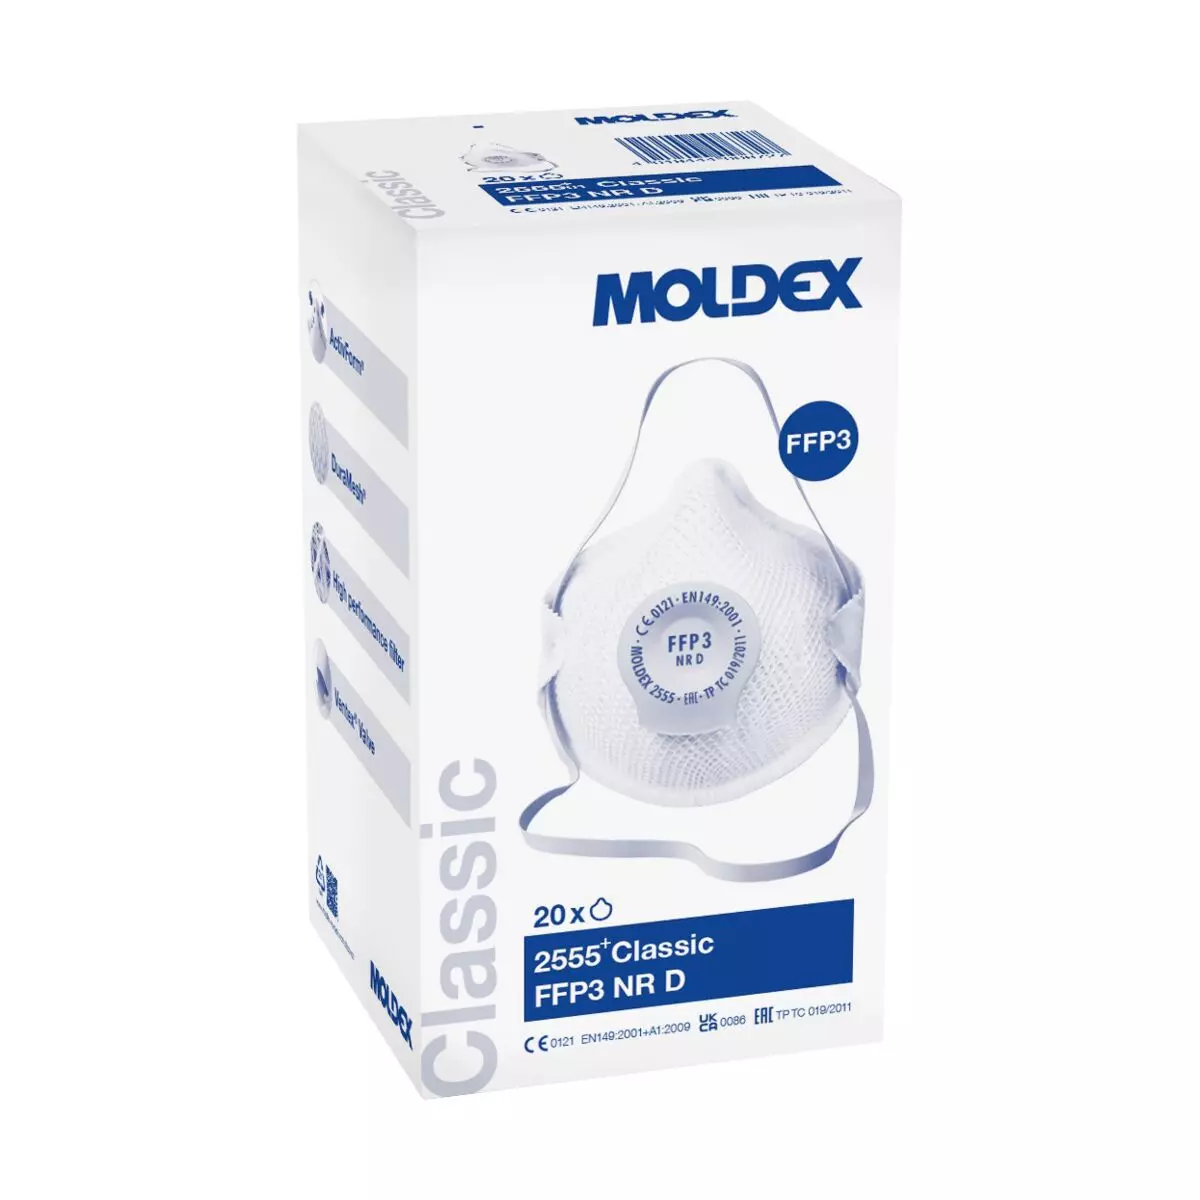 MOLDEX Atemschutzmasken, 20 Stk - FFP3